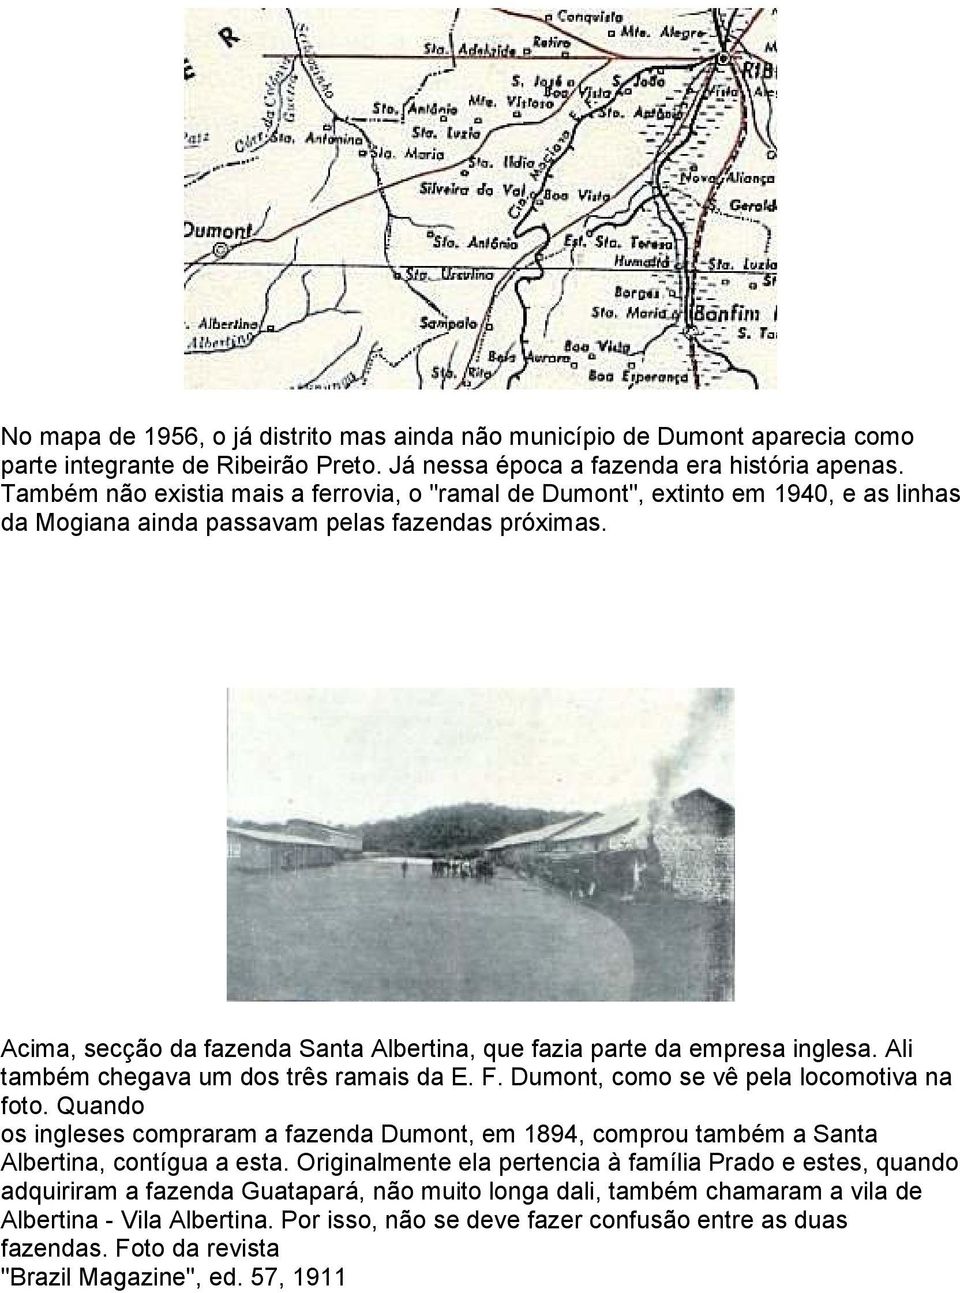 Acima, secção da fazenda Santa Albertina, que fazia parte da empresa inglesa. Ali também chegava um dos três ramais da E. F. Dumont, como se vê pela locomotiva na foto.